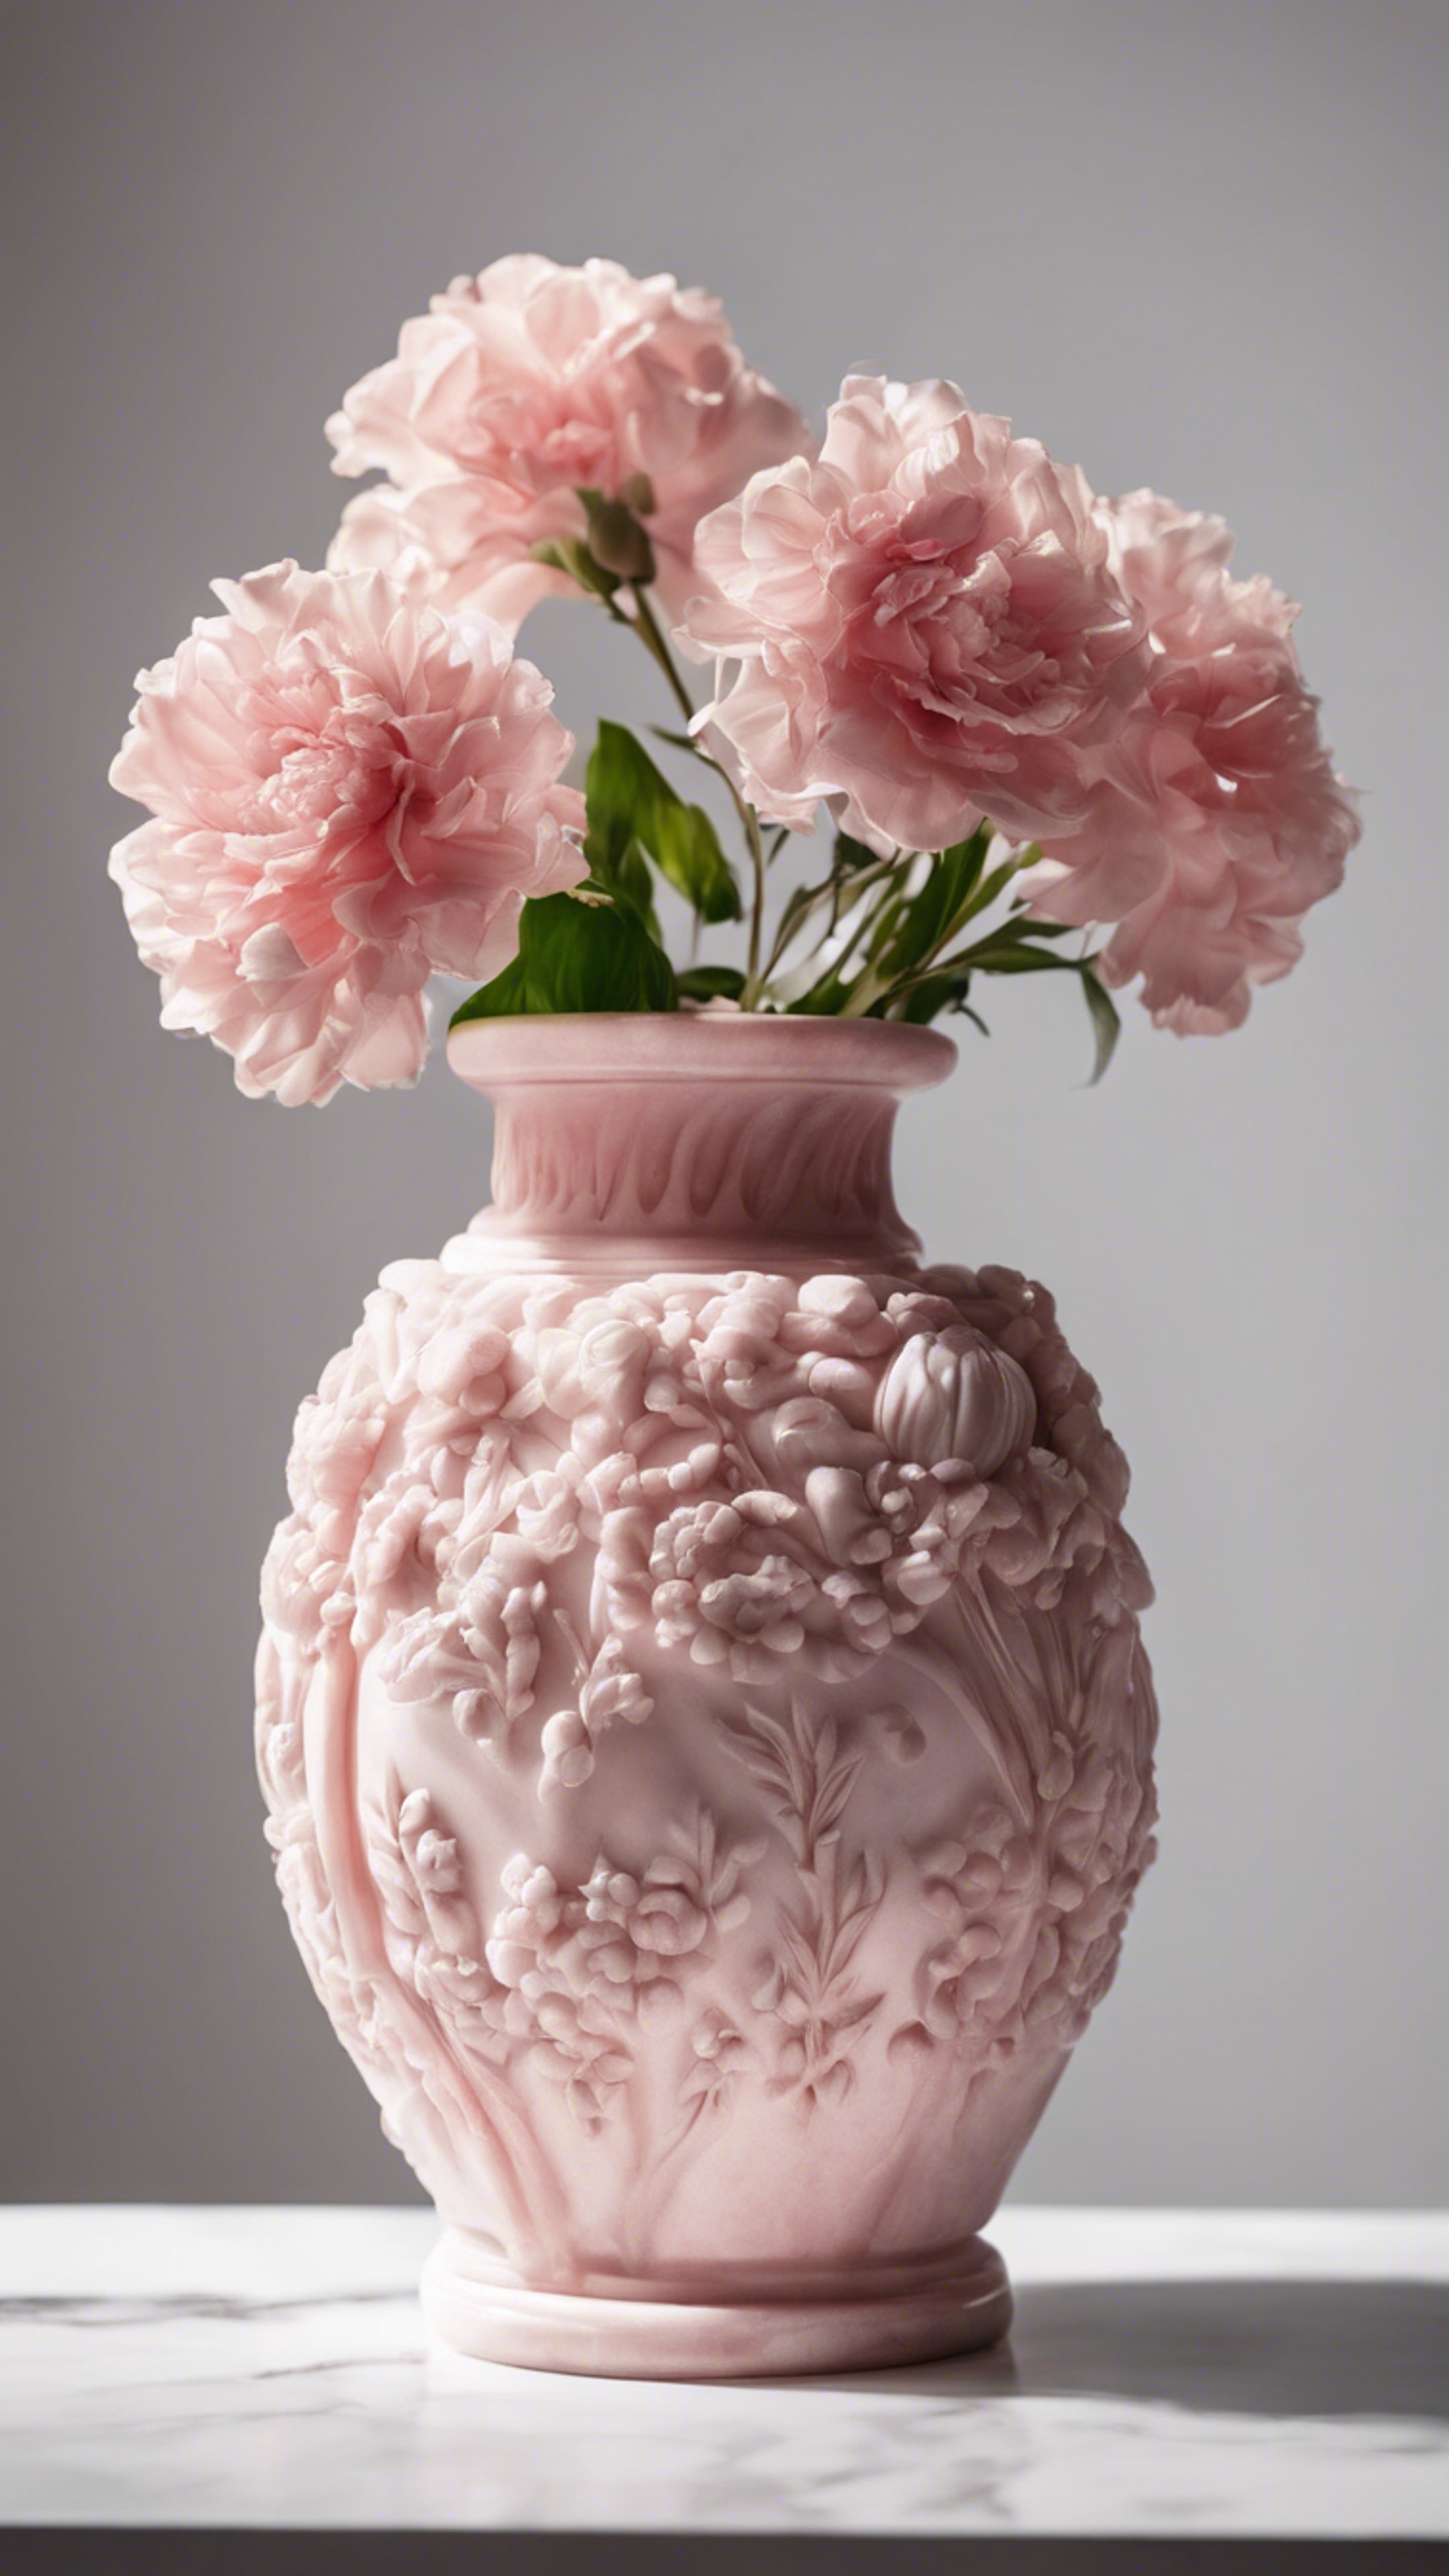 Elegantly carved pink marble flower vase against a white background. Fond d'écran[b14a0bd2340d44aeb9d9]